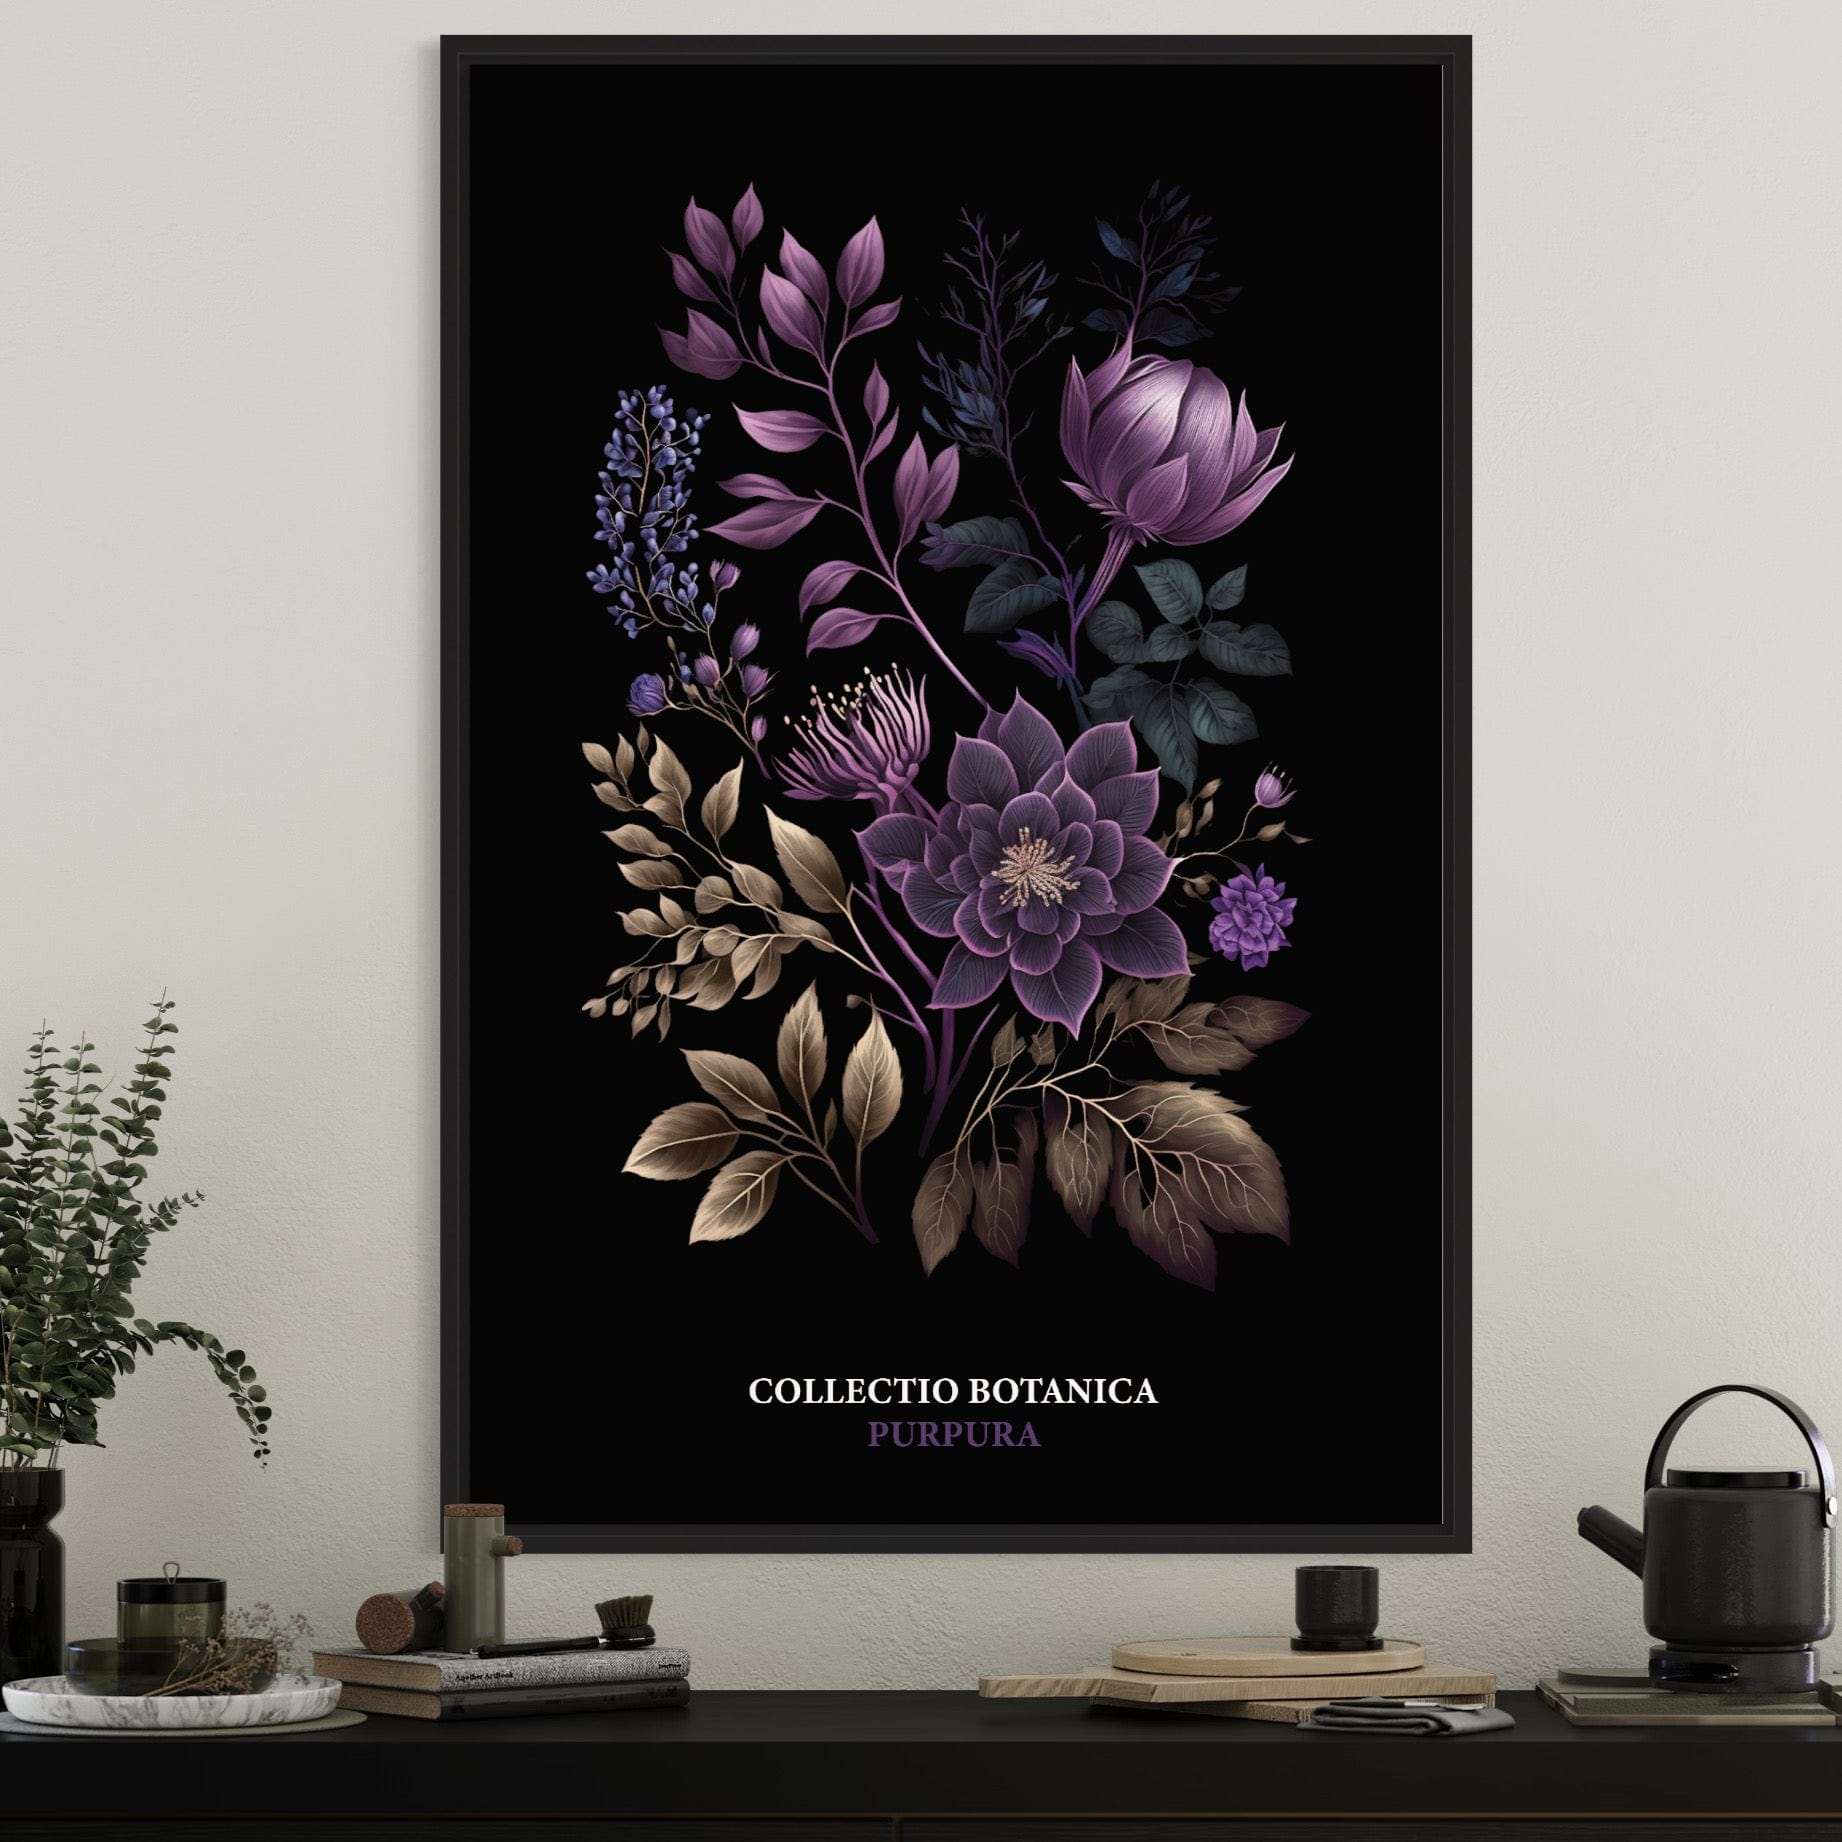 Purpura aus Collectio Botanica 